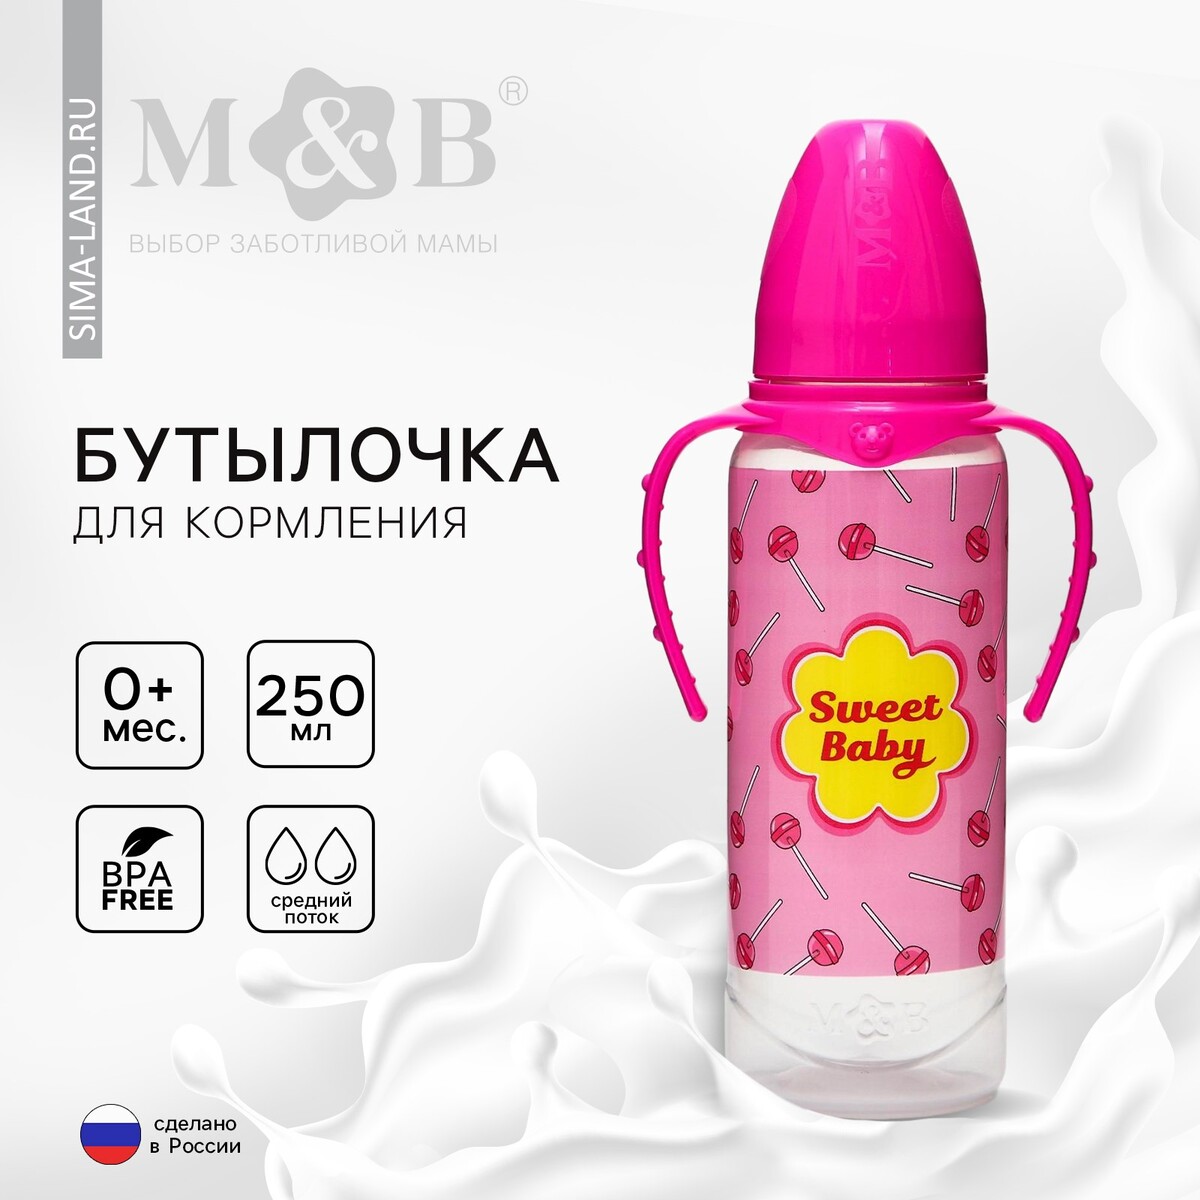 Бутылочка для кормления sweet baby, классическое горло, от 0 мес, 250 мл., цилиндр, с ручками